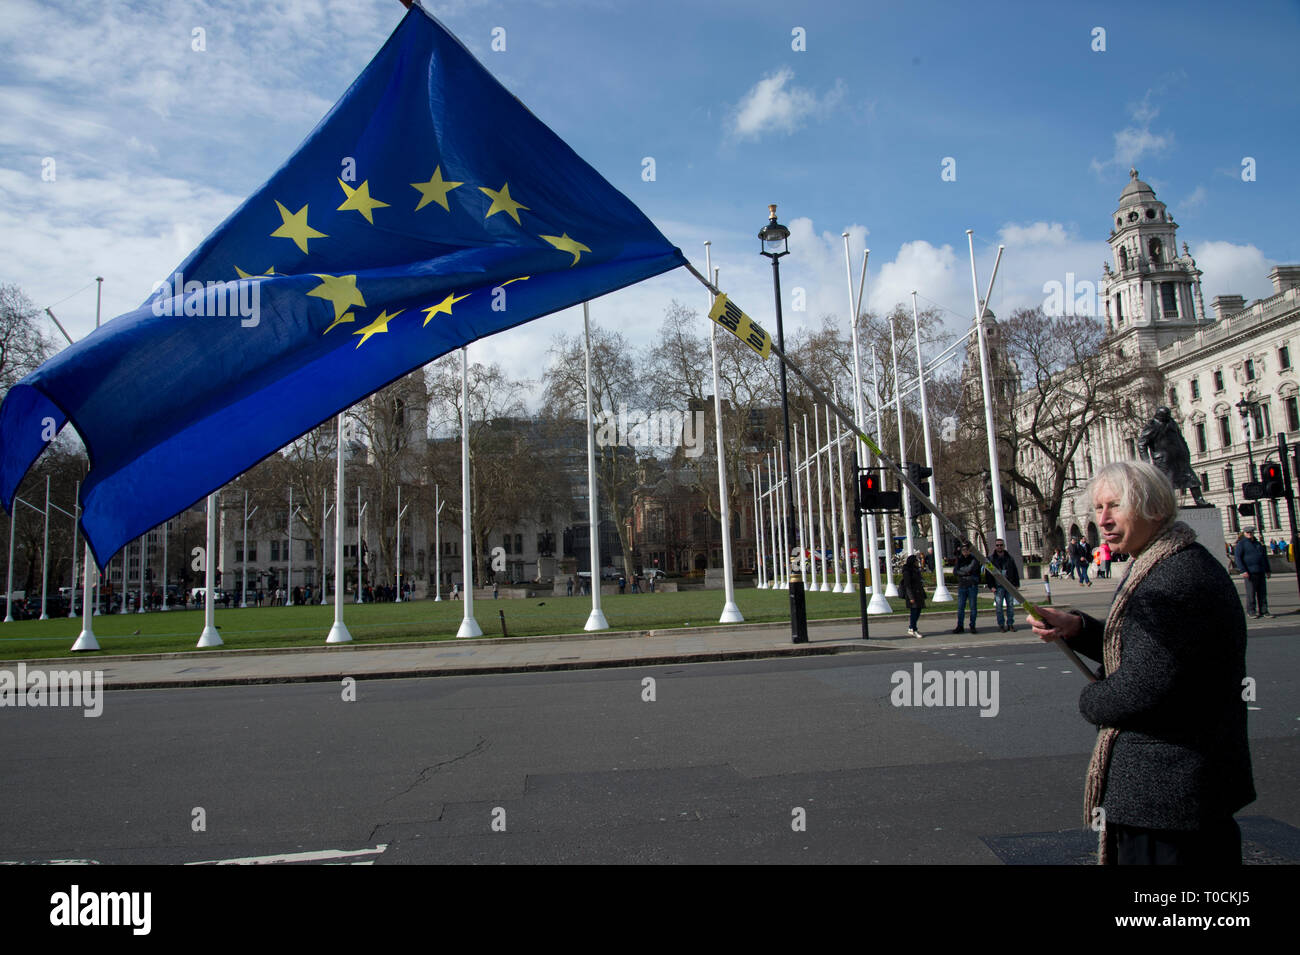 18 mars 2019 Westminster. Rester à l'extérieur du Parlement manifestant brandissant un drapeau européen.. Banque D'Images